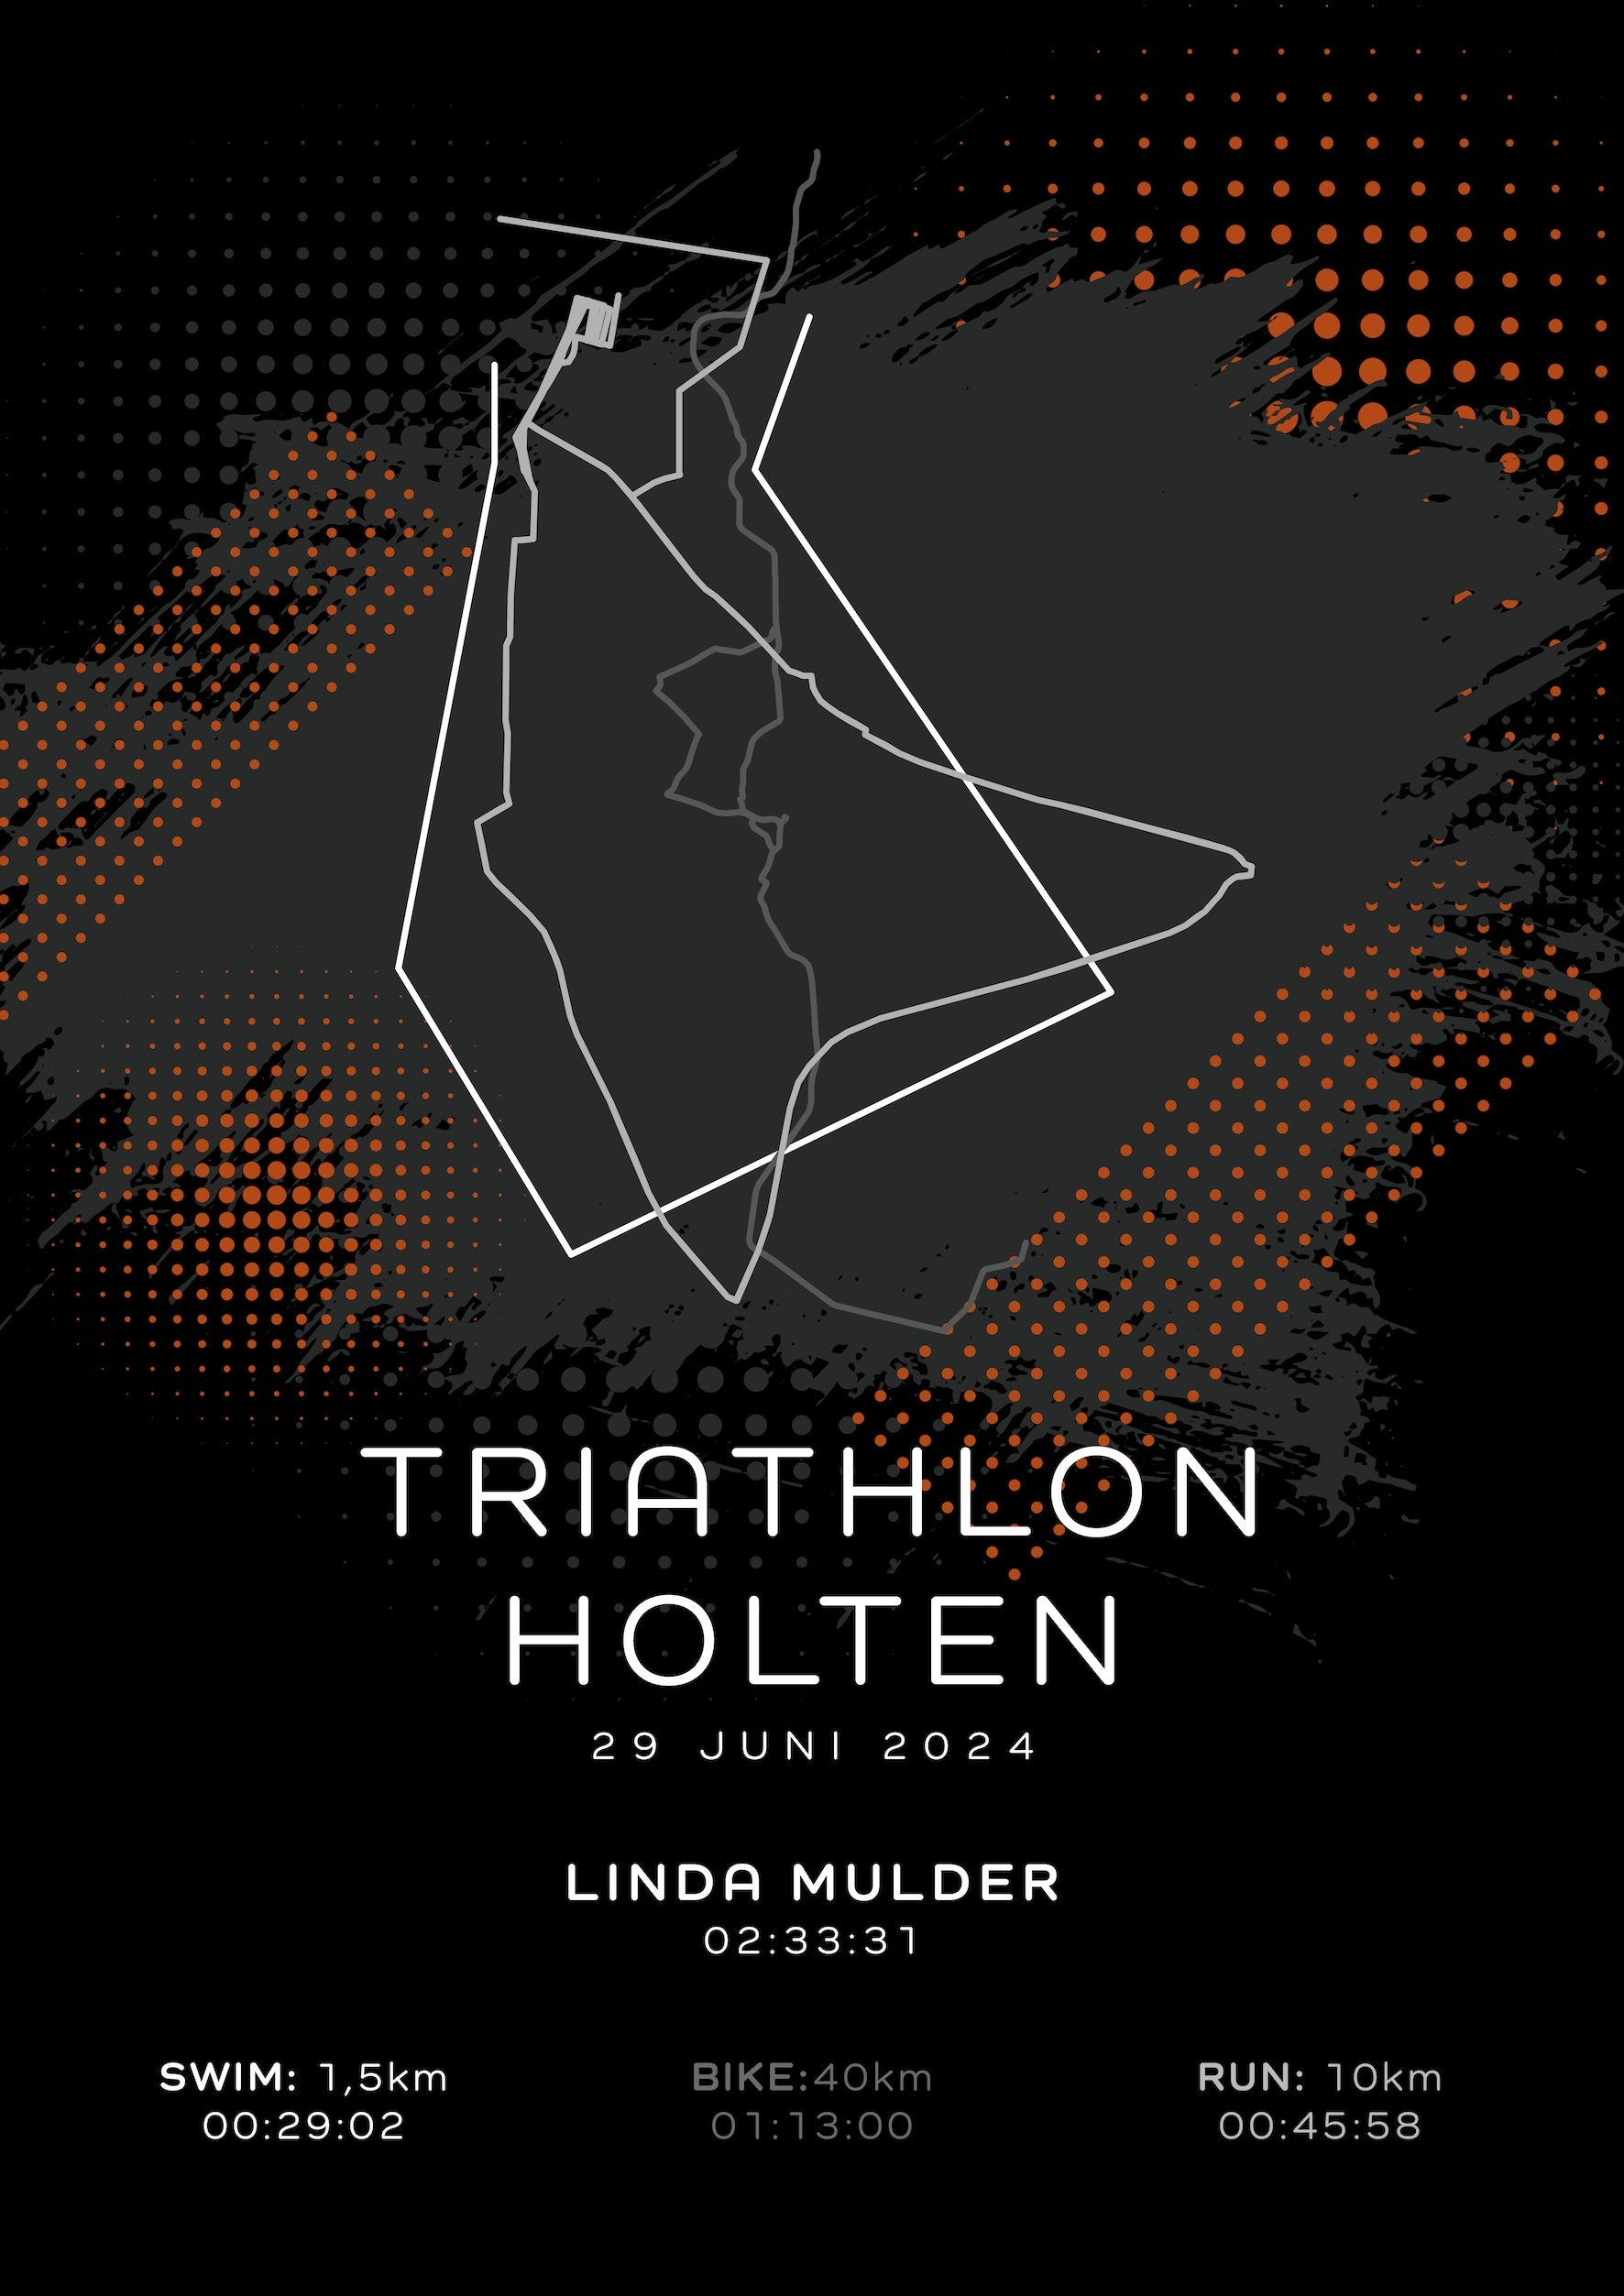 Triathlon Holten - Modern Dark - Poster